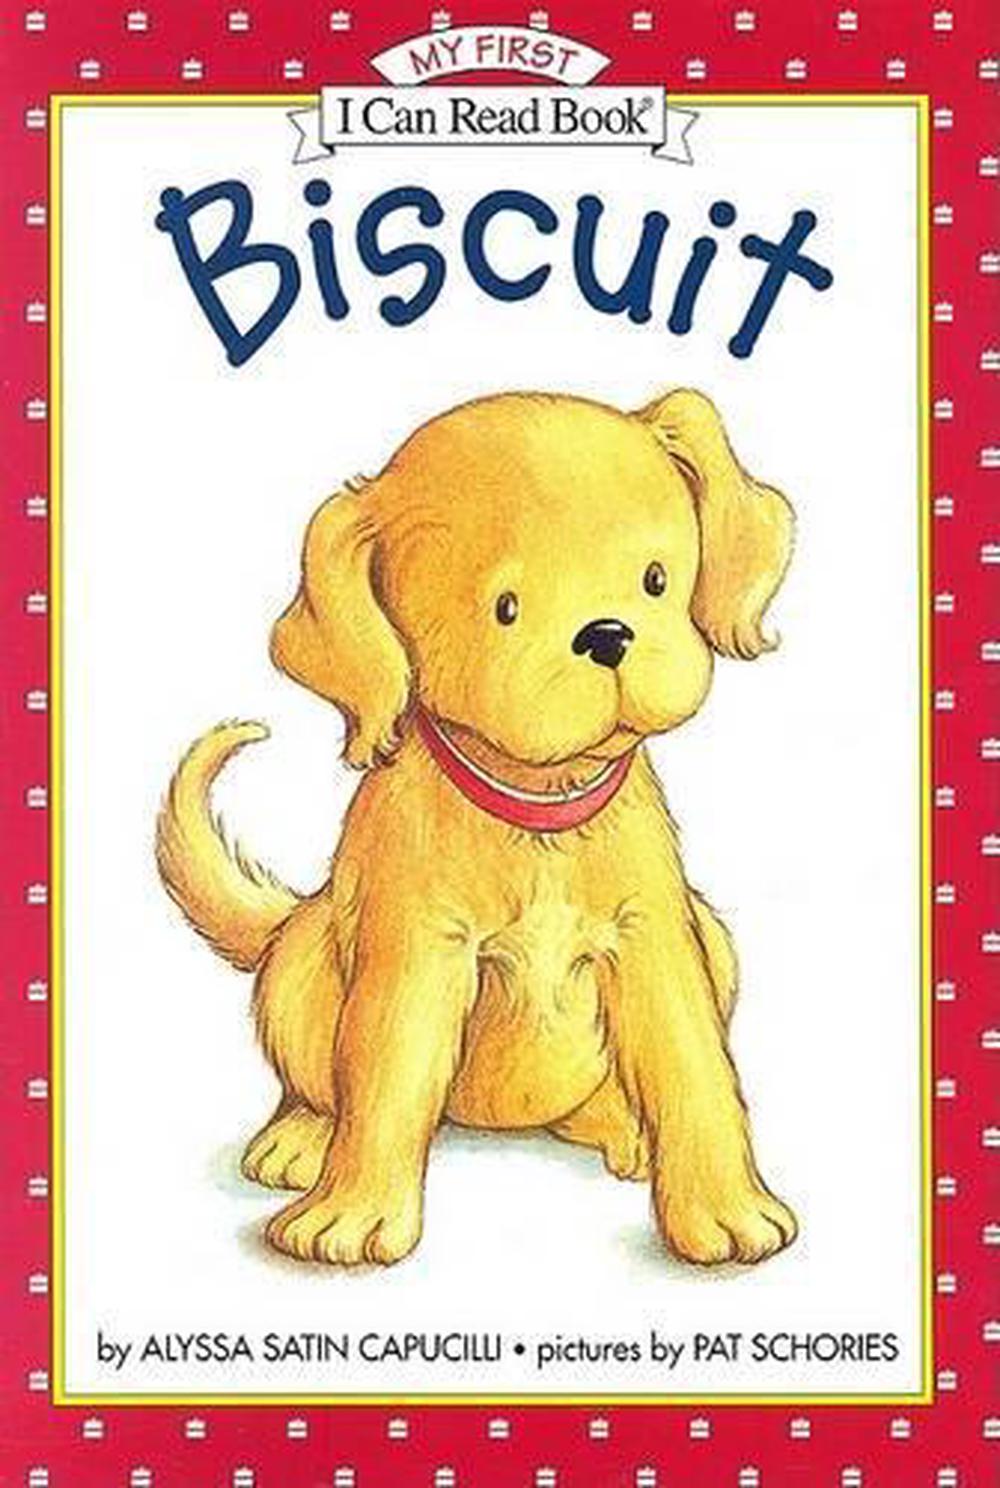 biscuit books similar